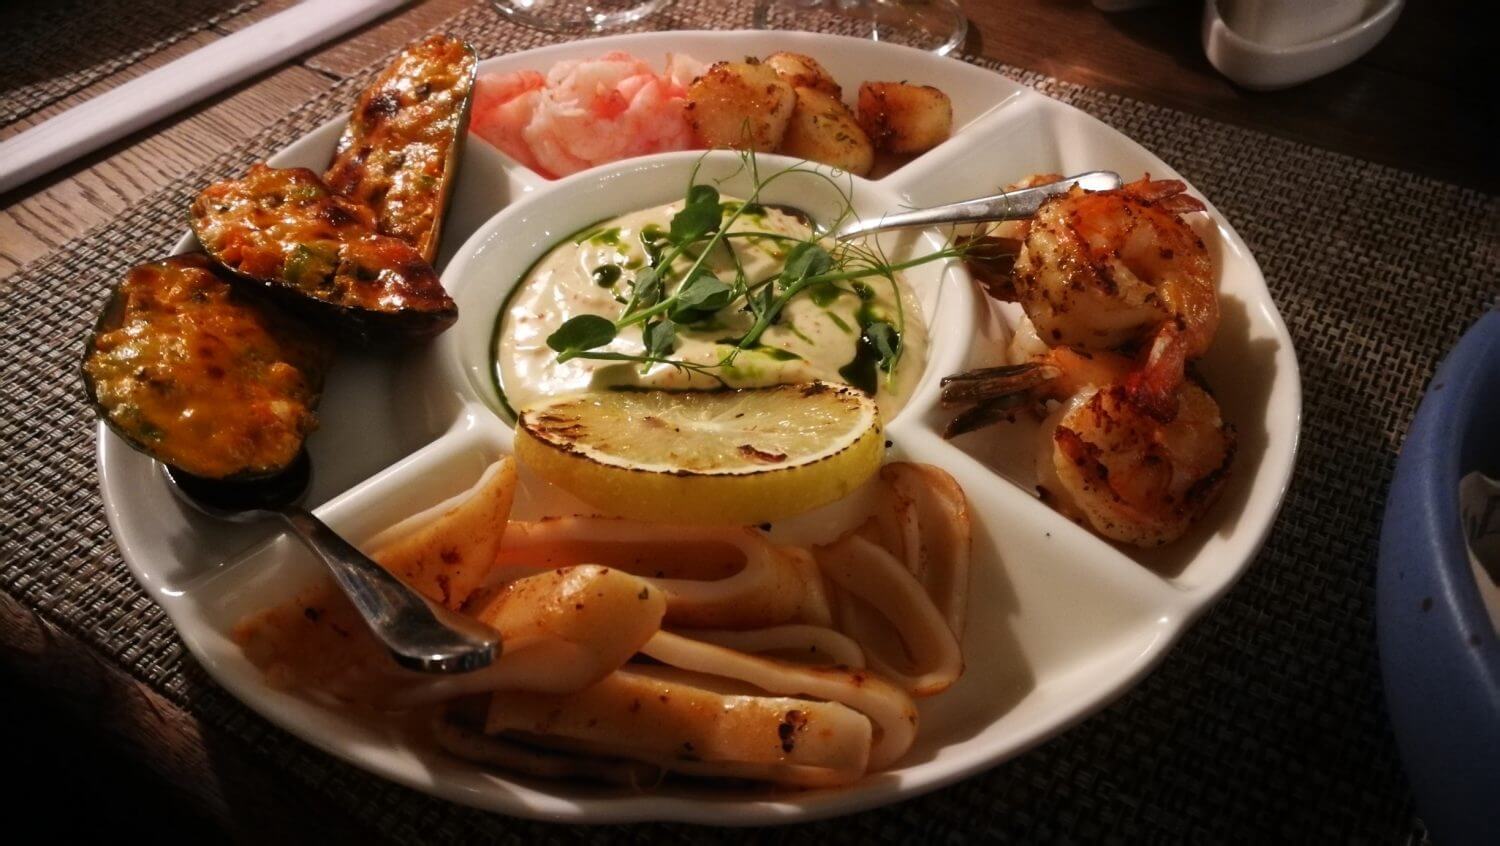 Seafood plate